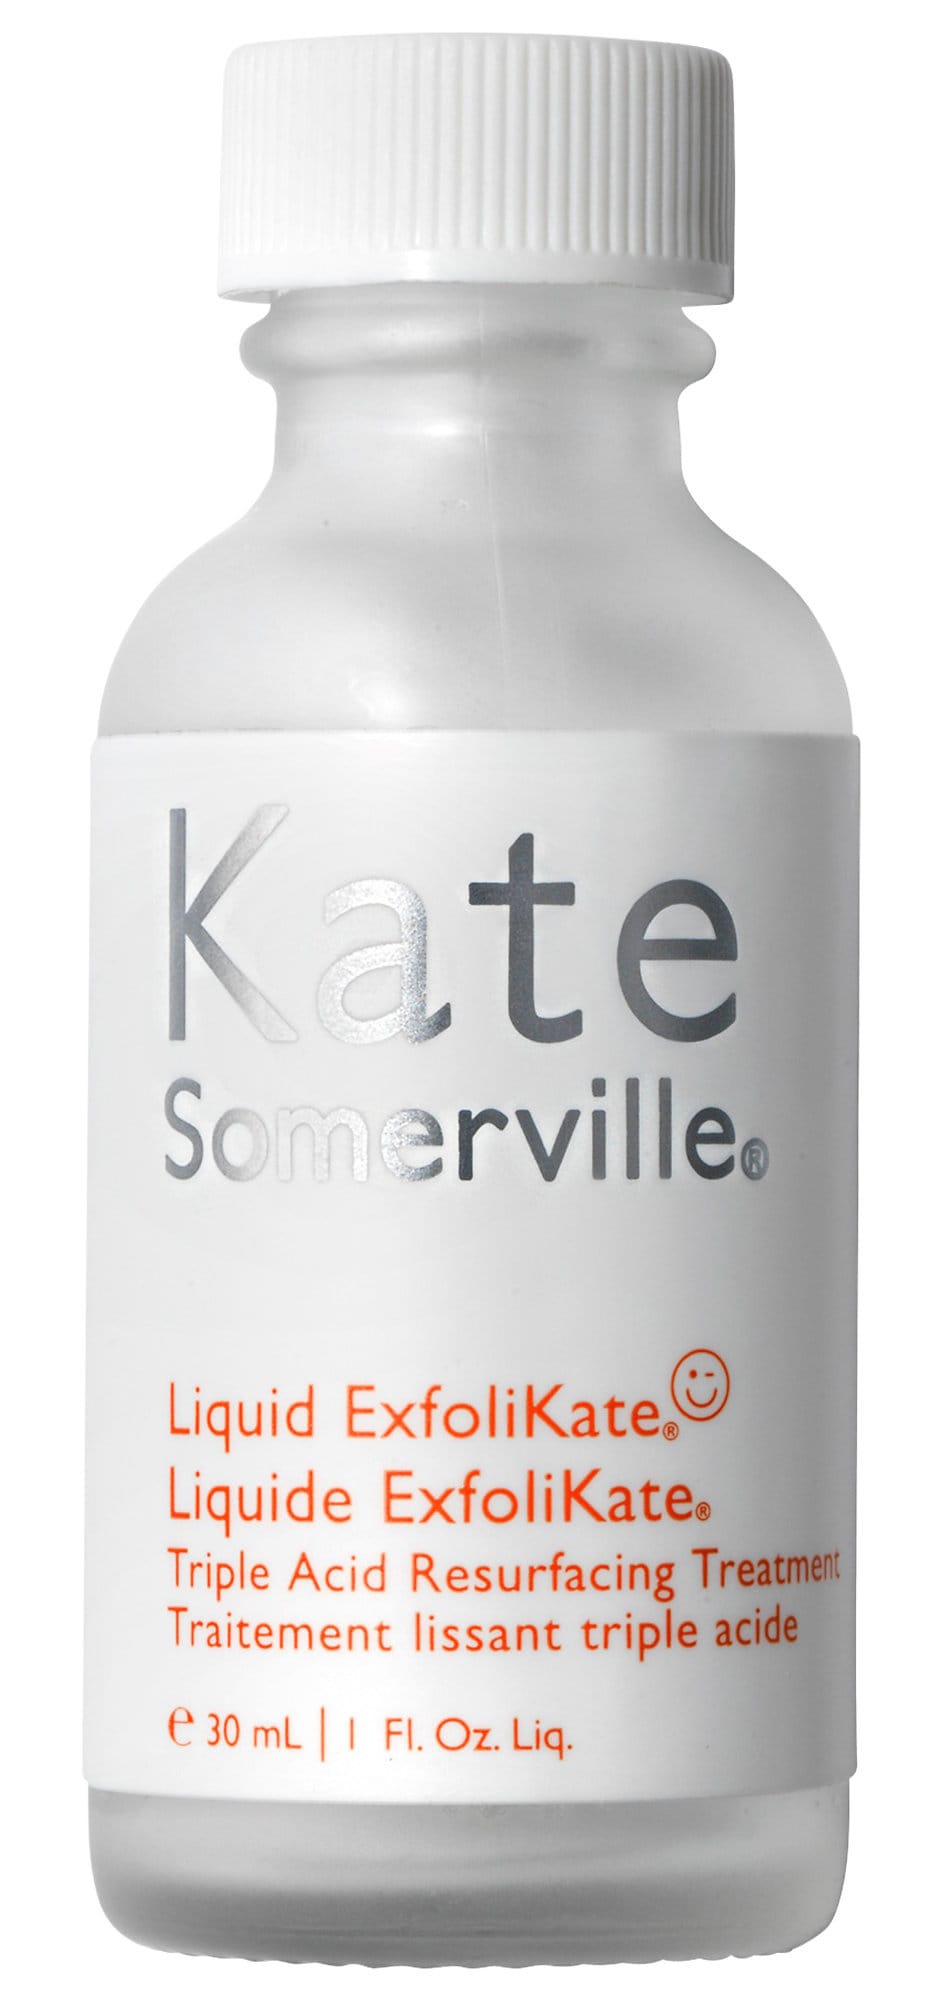 Kate Somerville Mini Liquid Exfolikate® Triple Acid Resurfacing Treatment